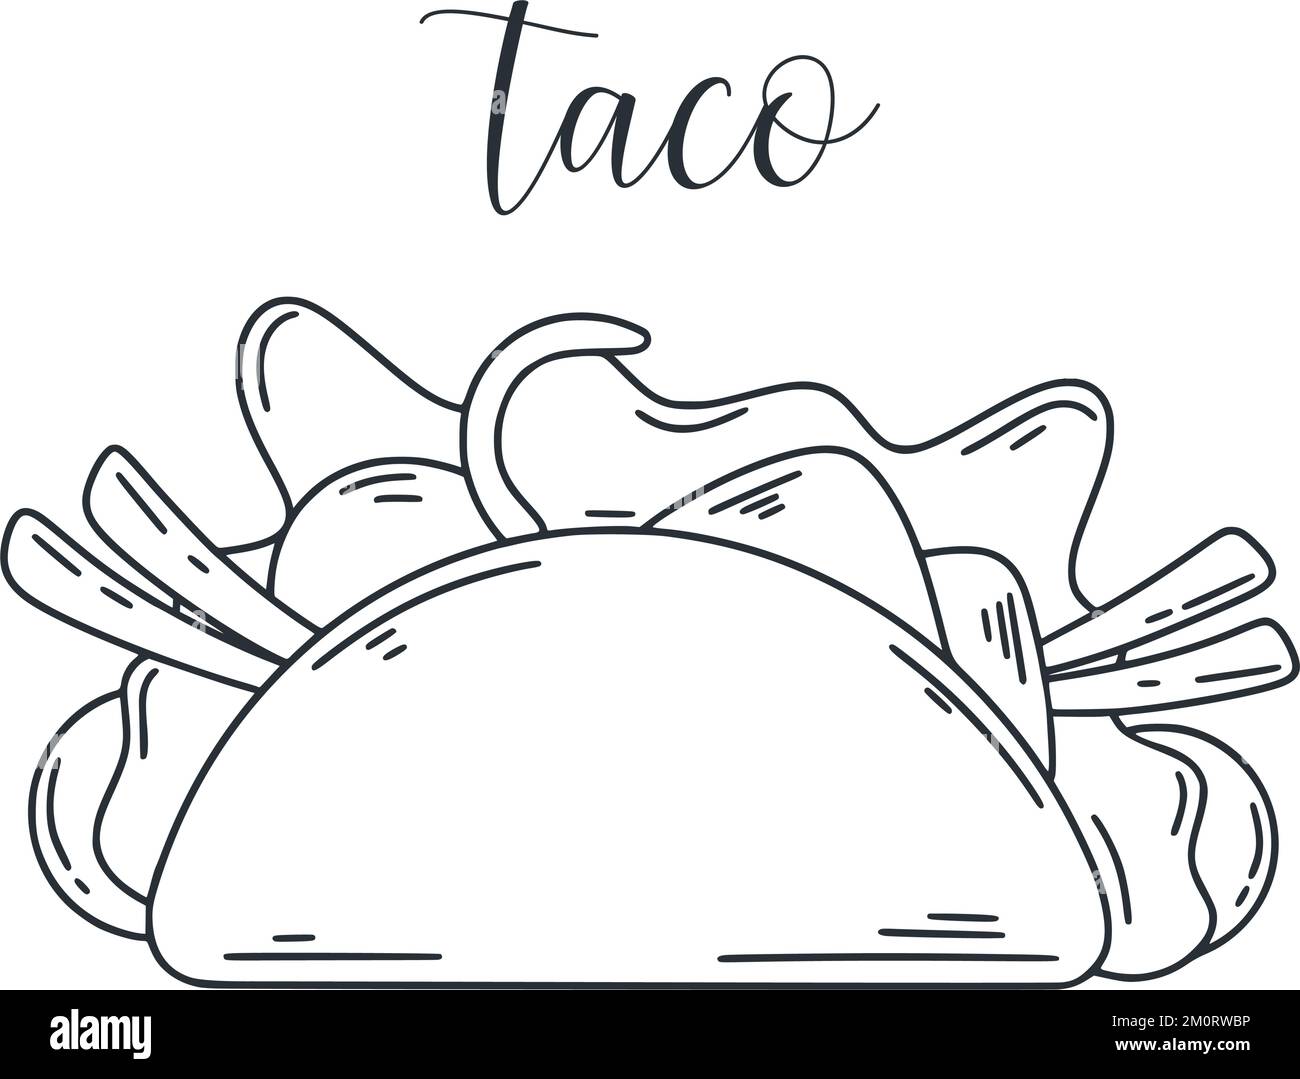 Illustrazione di Taco doodle. Inchiostro schizzo di tartilla farcita. Antipasto messicano con carne e verdure clip art. Cibo latino-americano isolato vettore malato Illustrazione Vettoriale